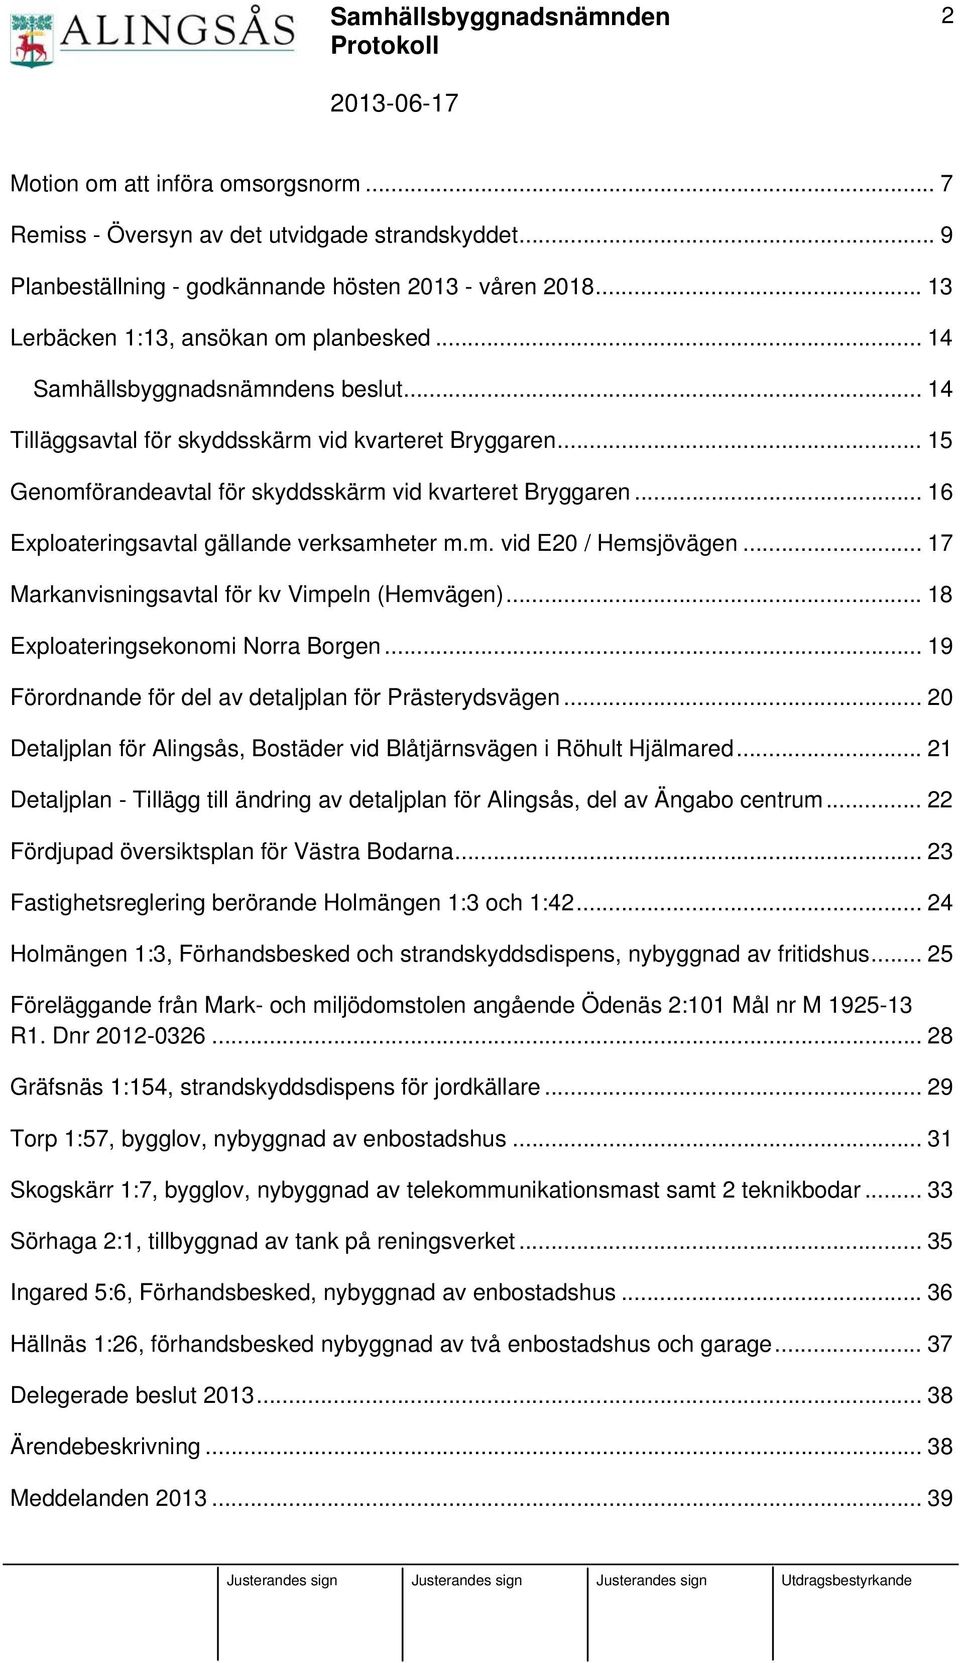 .. 17 Markanvisningsavtal för kv Vimpeln (Hemvägen)... 18 Exploateringsekonomi Norra Borgen... 19 Förordnande för del av detaljplan för Prästerydsvägen.